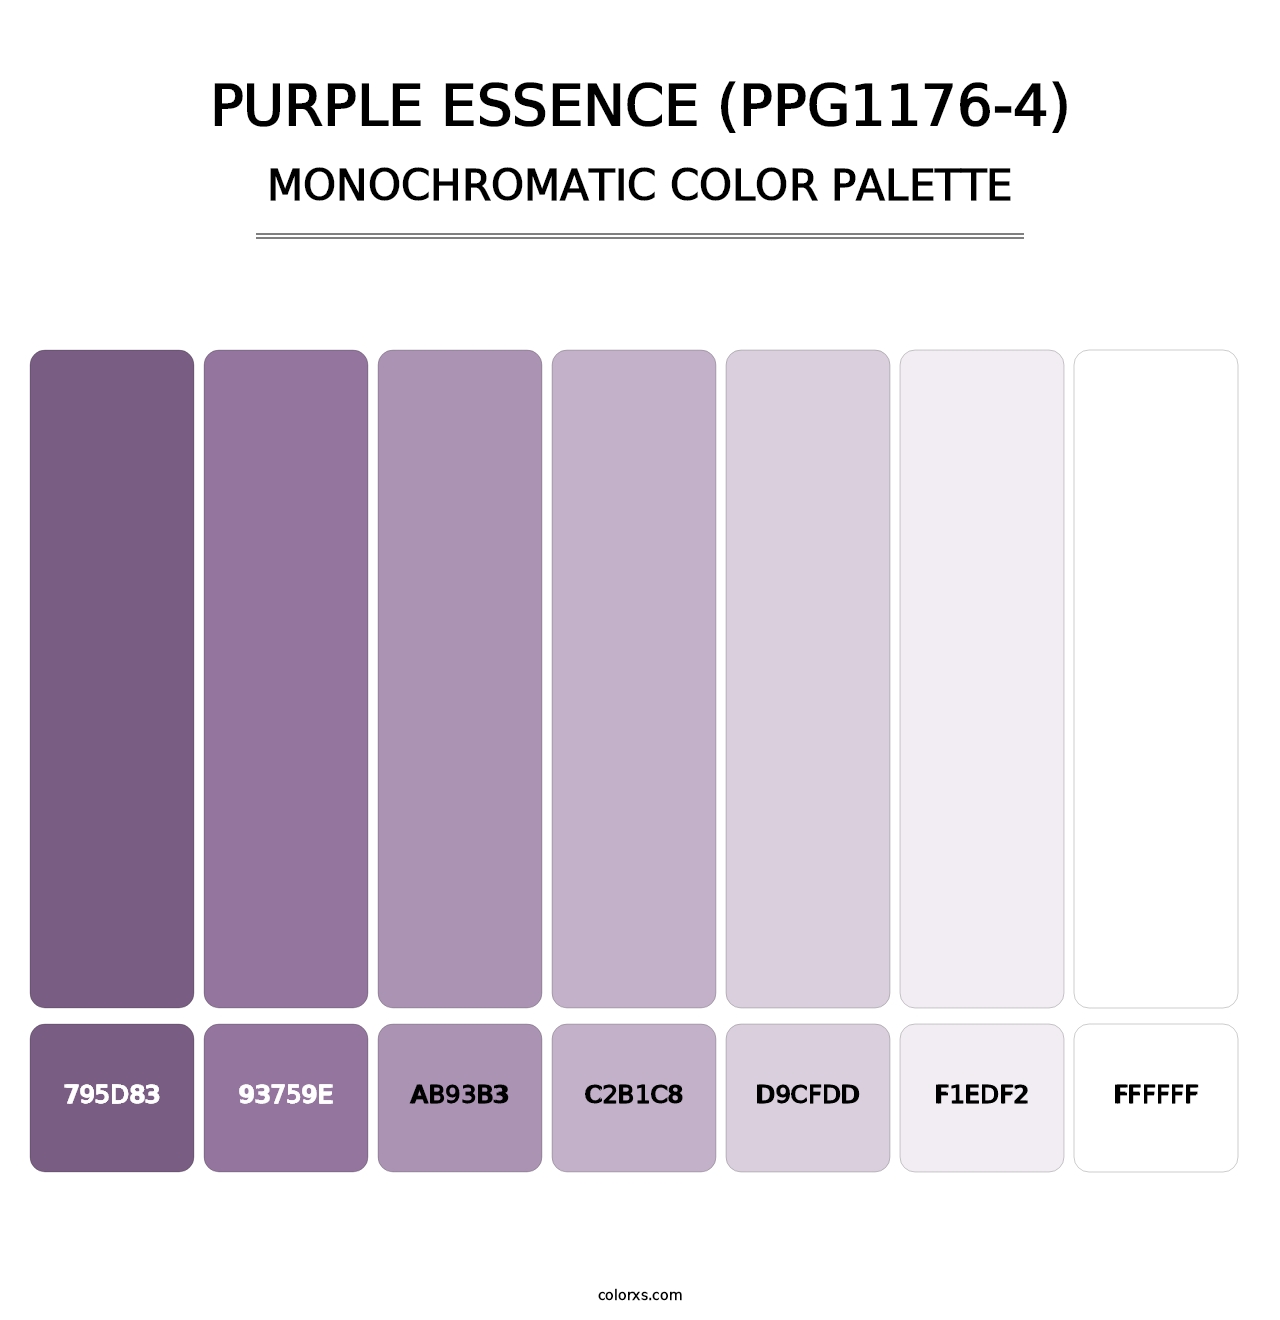 Purple Essence (PPG1176-4) - Monochromatic Color Palette